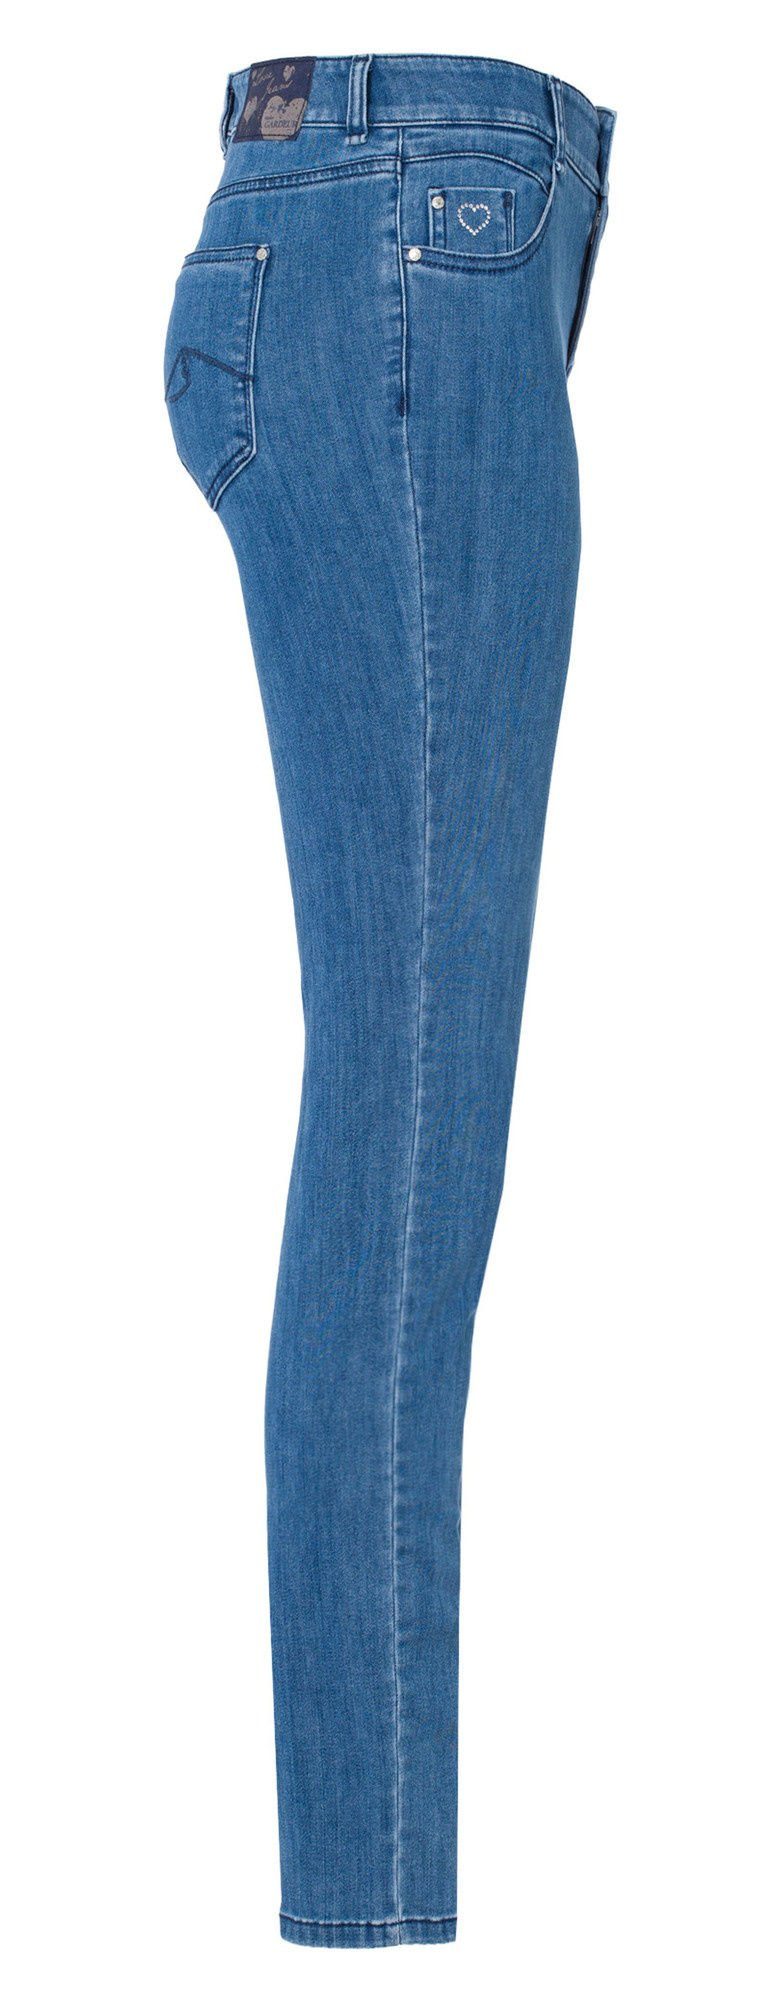 Atelier GARDEUR Stretch-Jeans ATELIER GARDEUR ZURI-061854-0165 mid blue ZURI